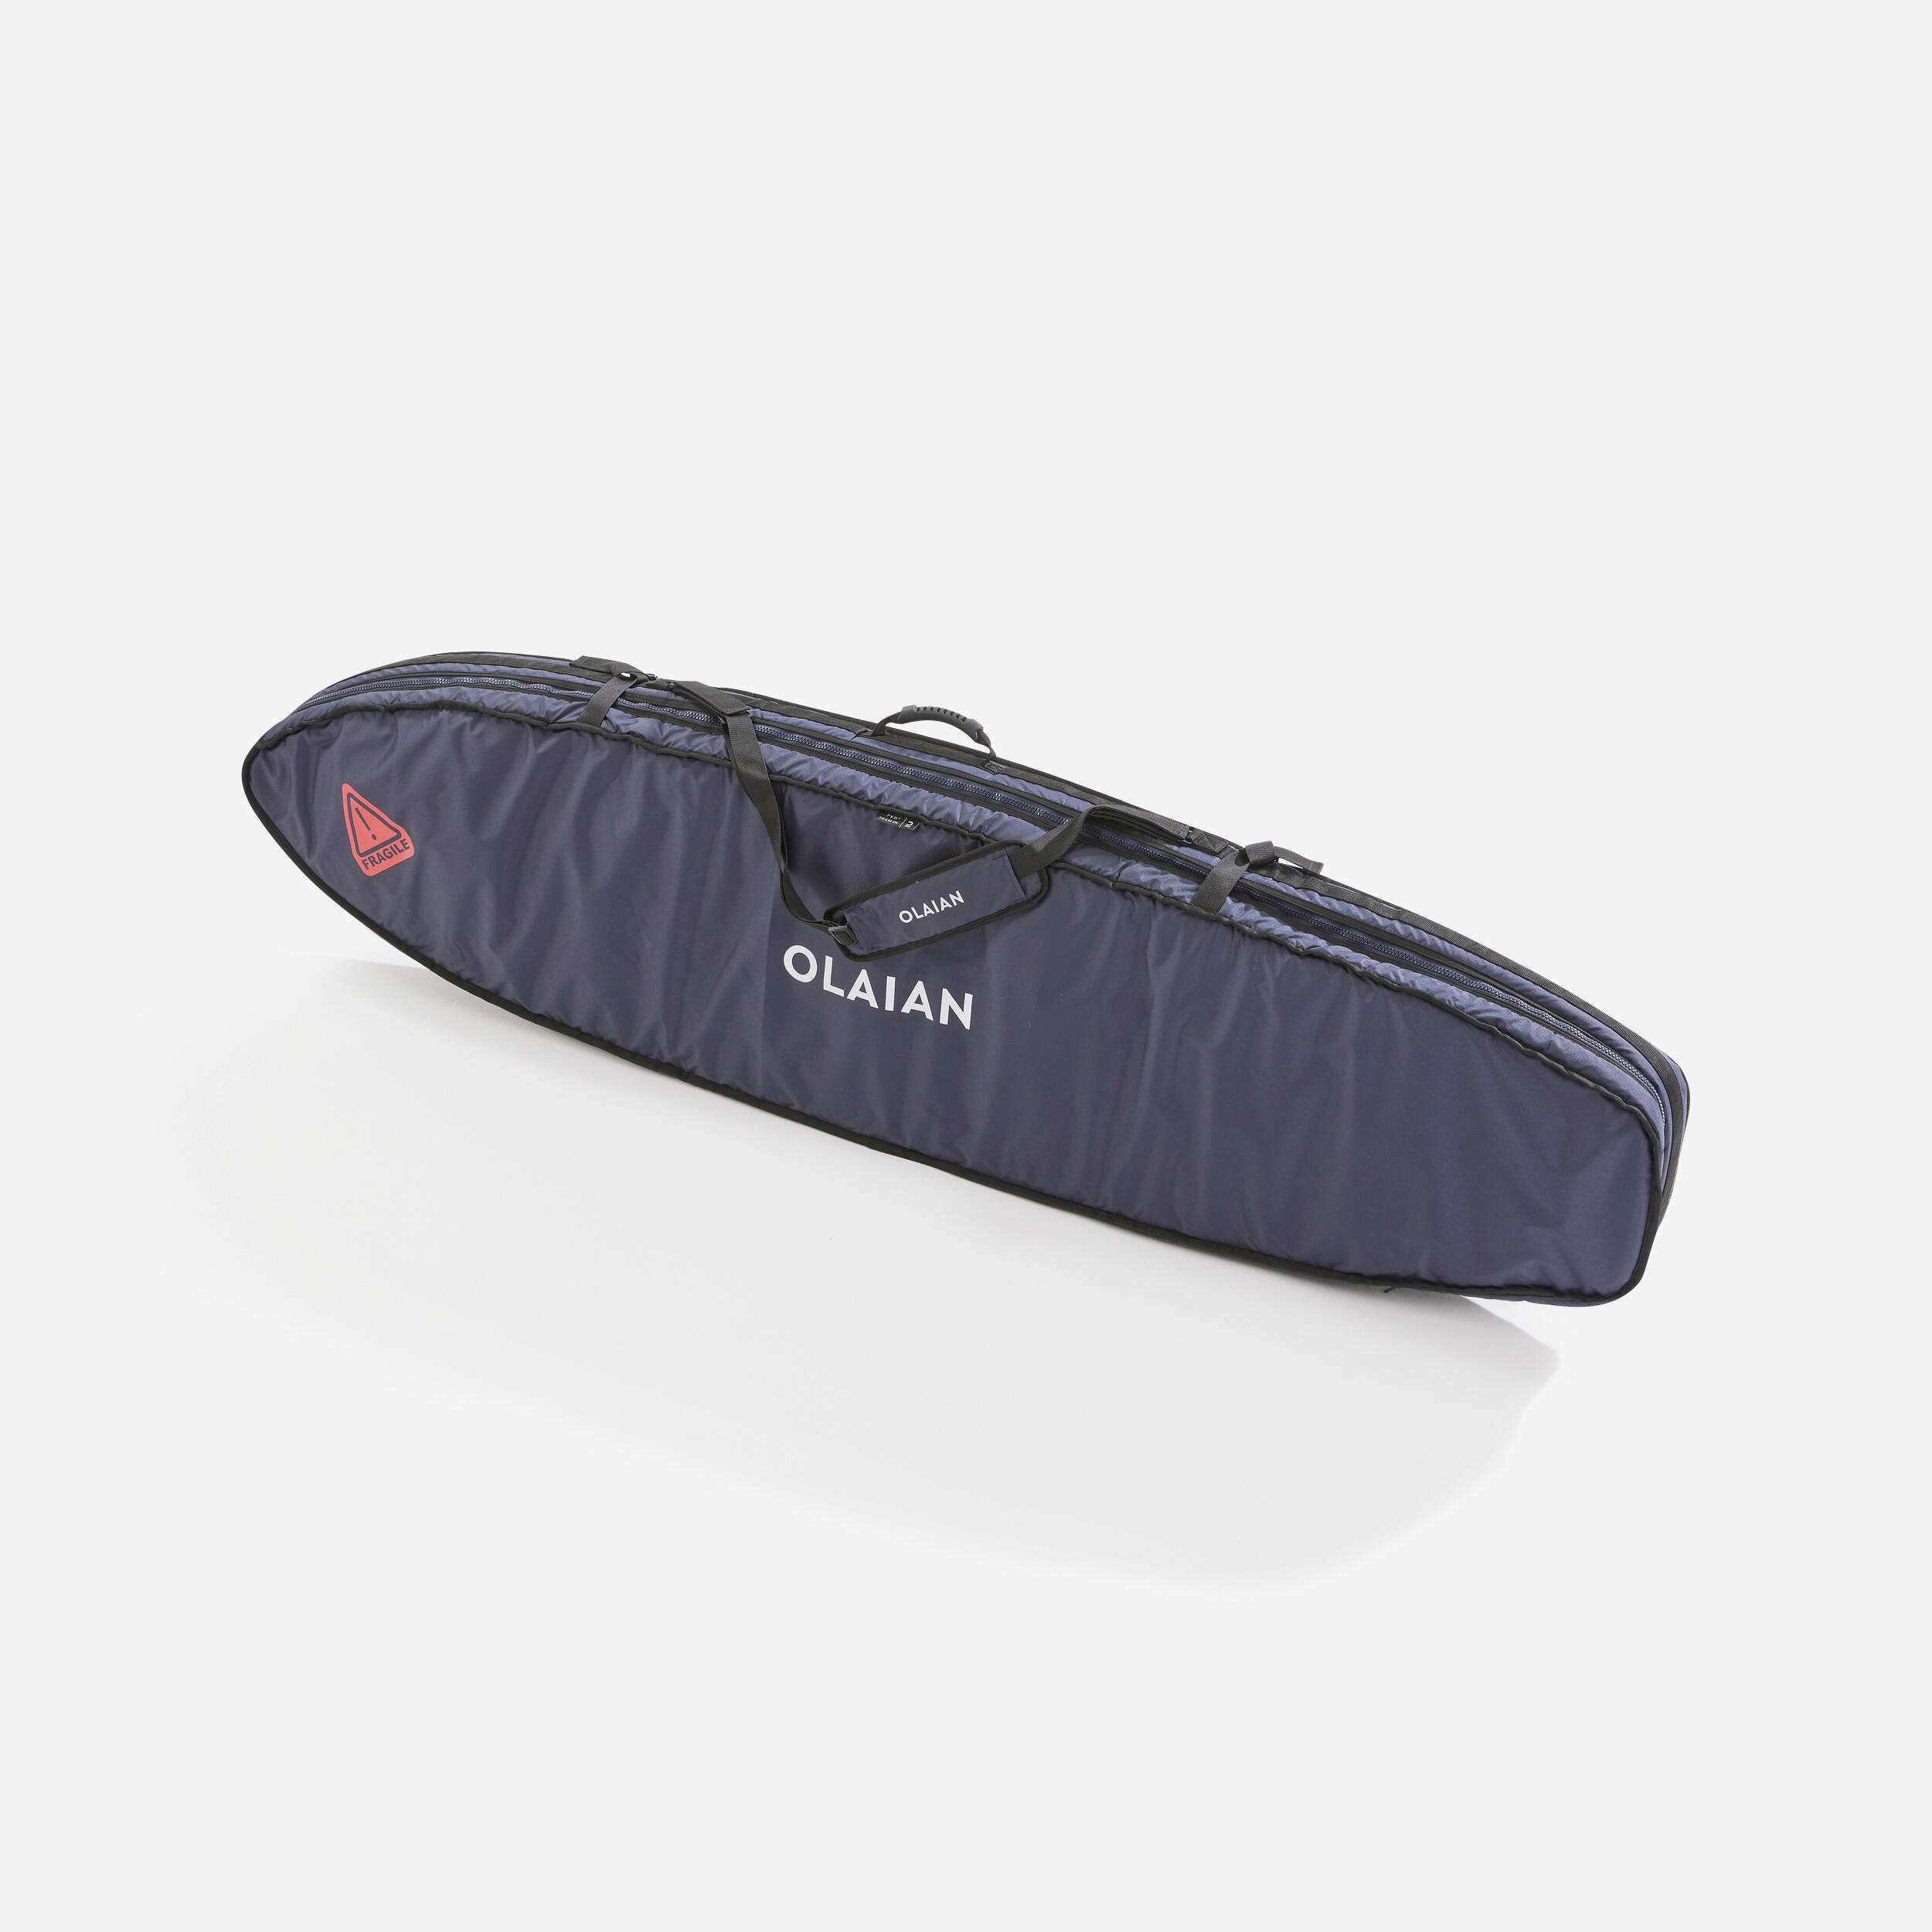 OLAIAN Boardbag 900 Reisetasche für 2 Surfboards 7' Travelbag EINHEITSGRÖSSE